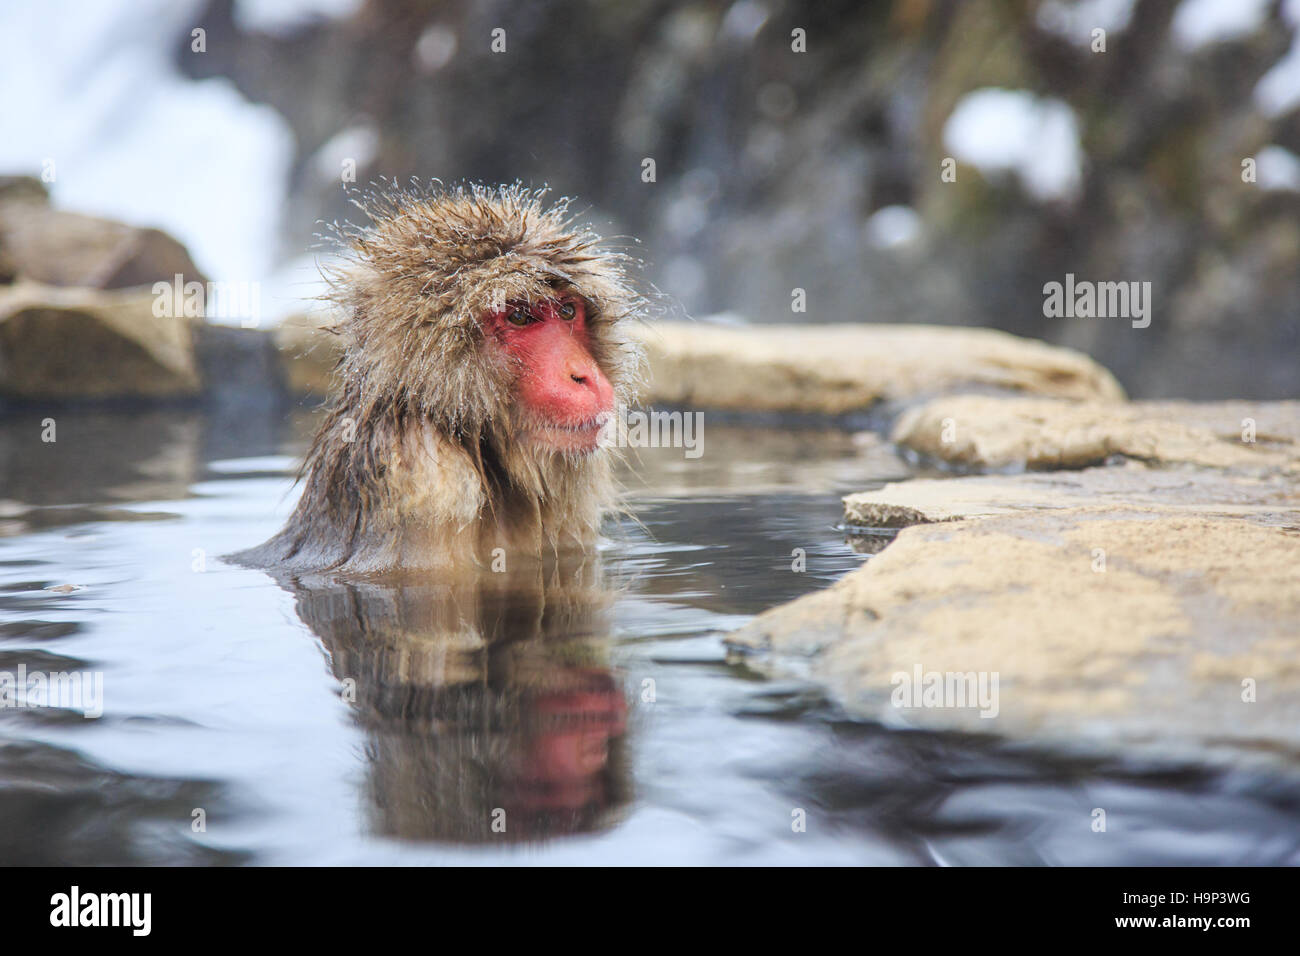 Mono de nieve en un onsen (aguas termales naturales), ubicado en el Parque Jigokudani, Yudanaka. Nagano, Japón. Foto de stock